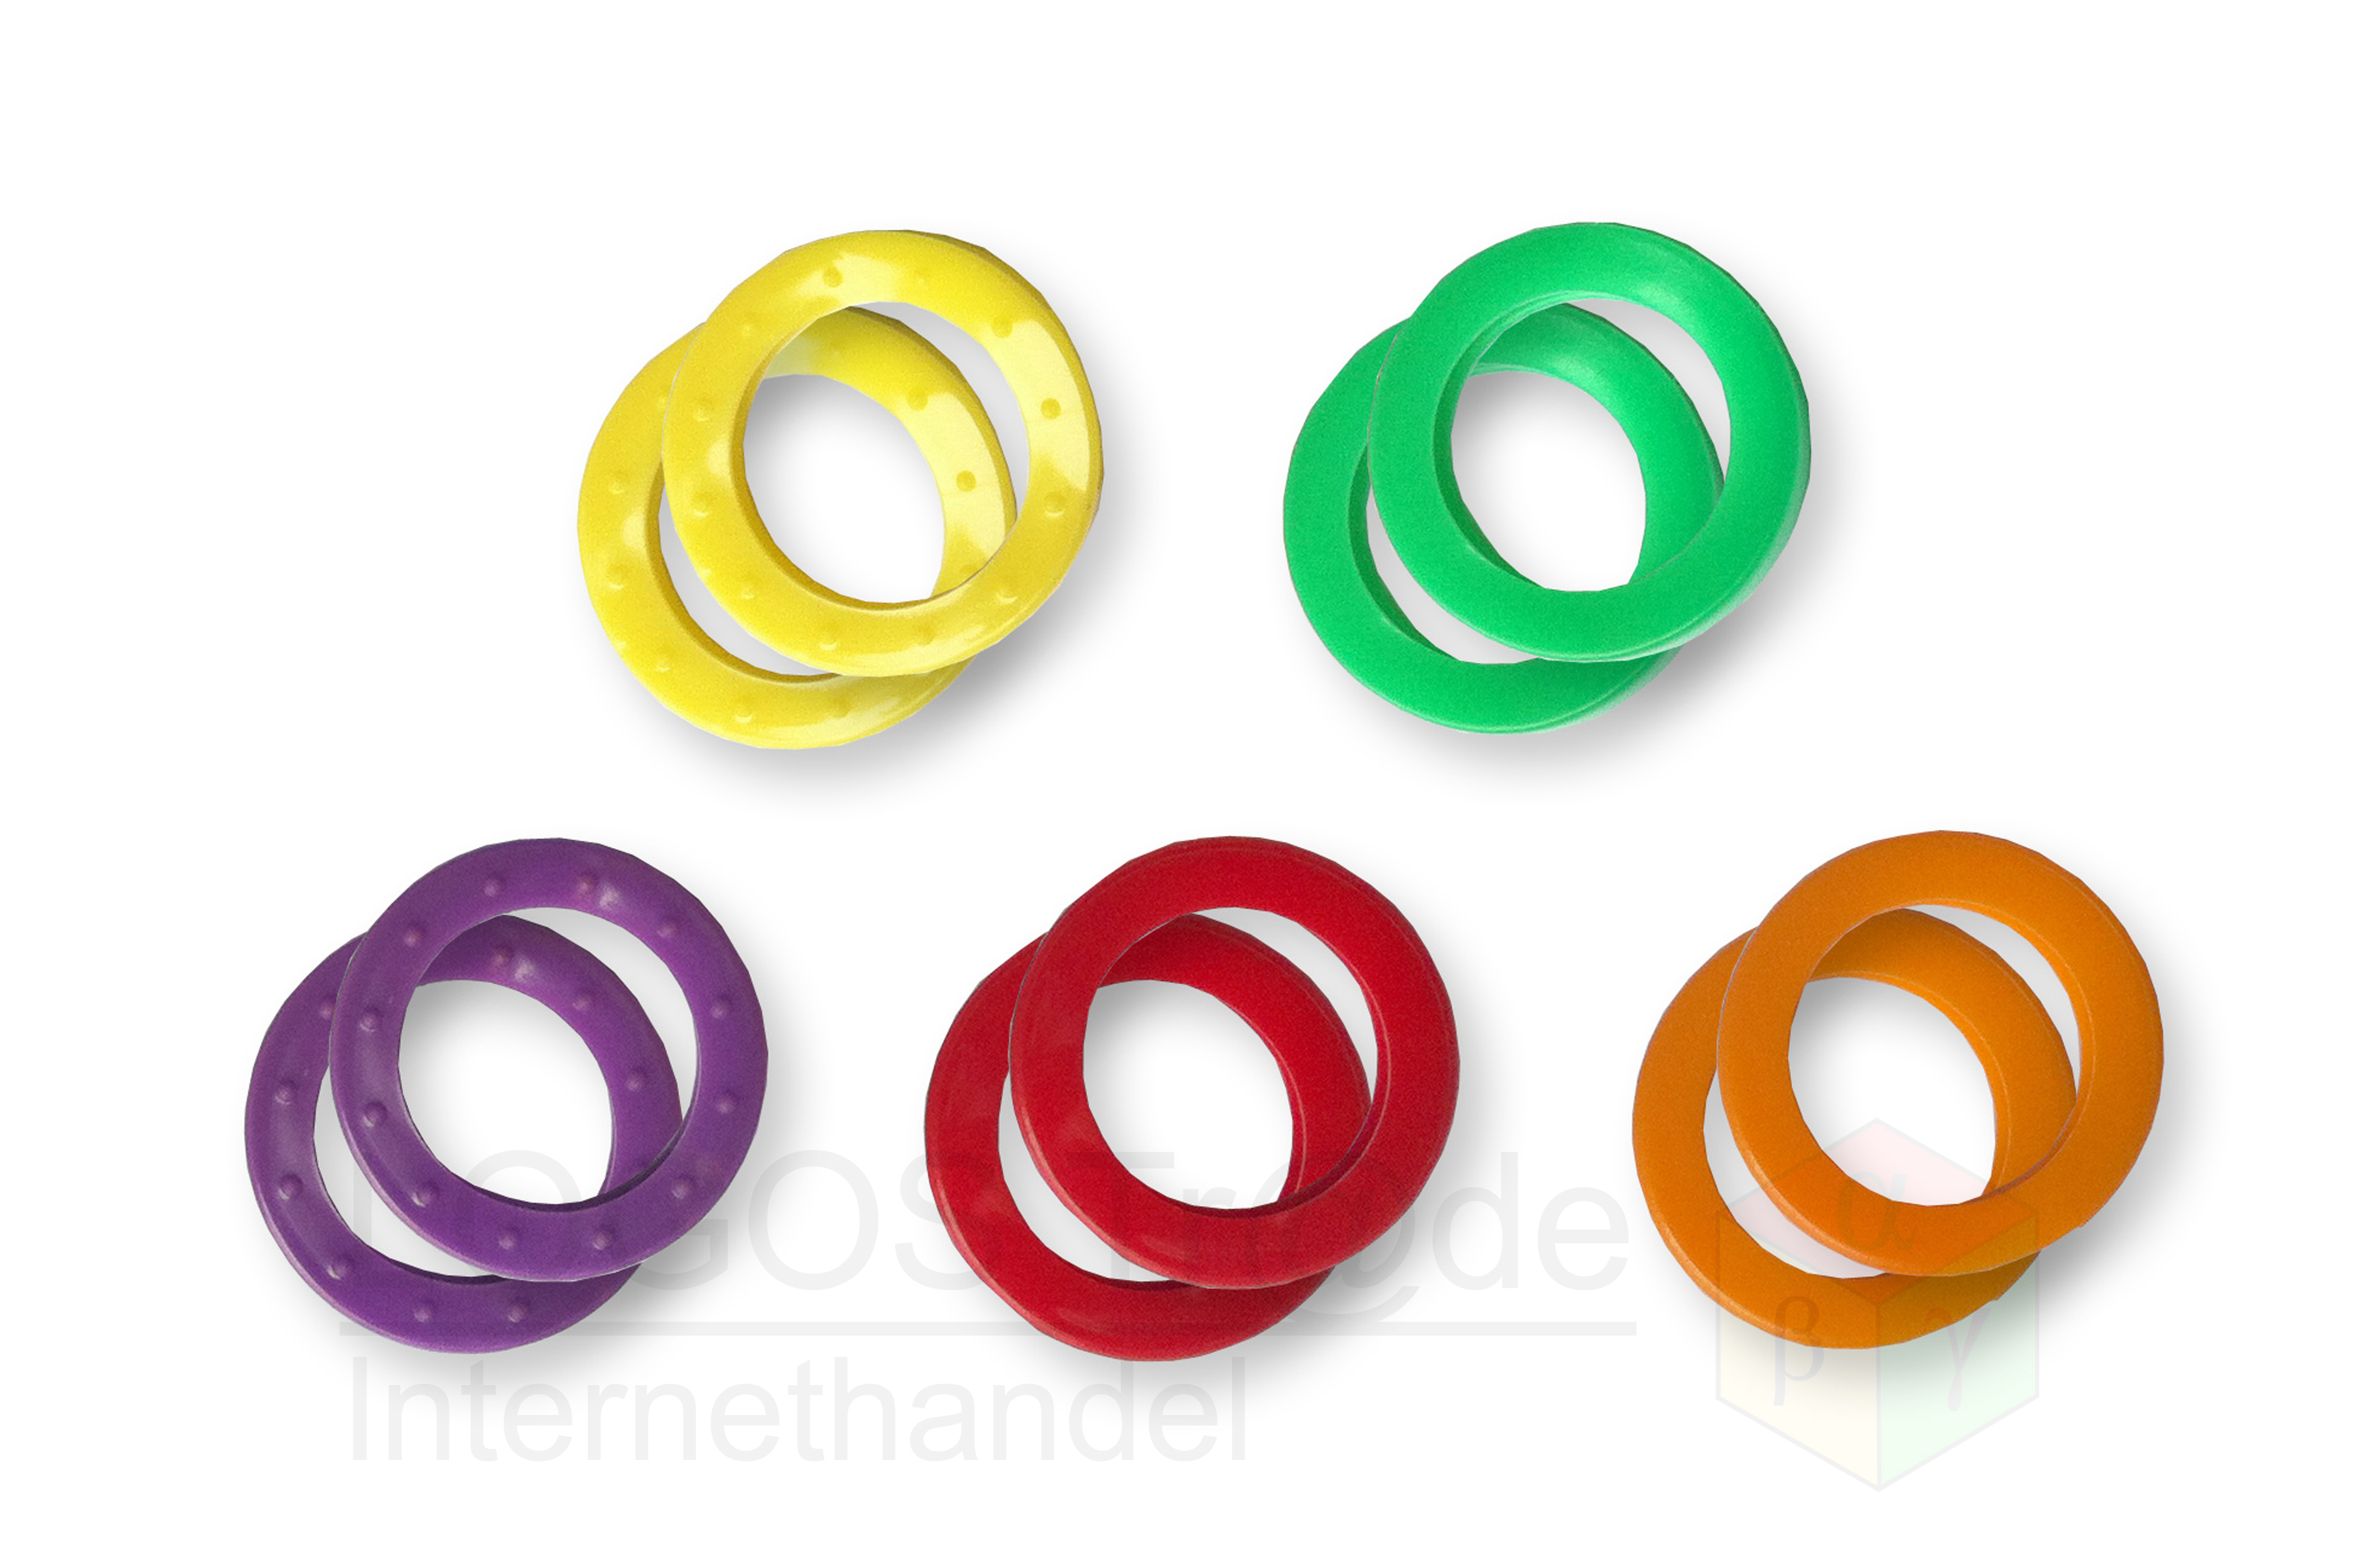 10 Schlüsselkennringe (rund), Ø ca. 24mm: 2 x gelb, 2 x grün, 2 x violett, 2 x rot, 2 x orange